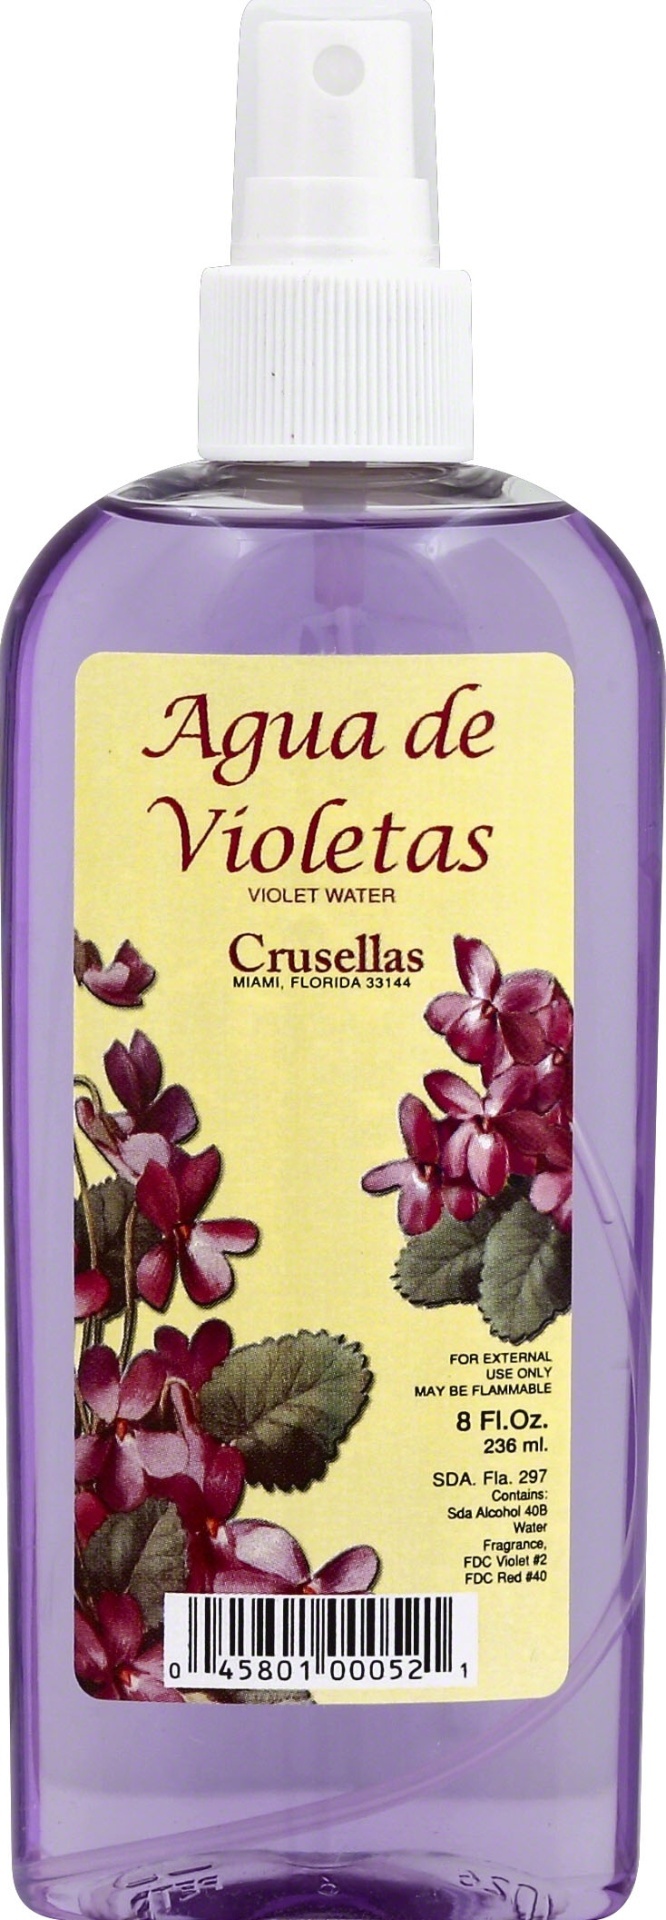 slide 1 of 1, Crusellas Violet Water, 8 oz